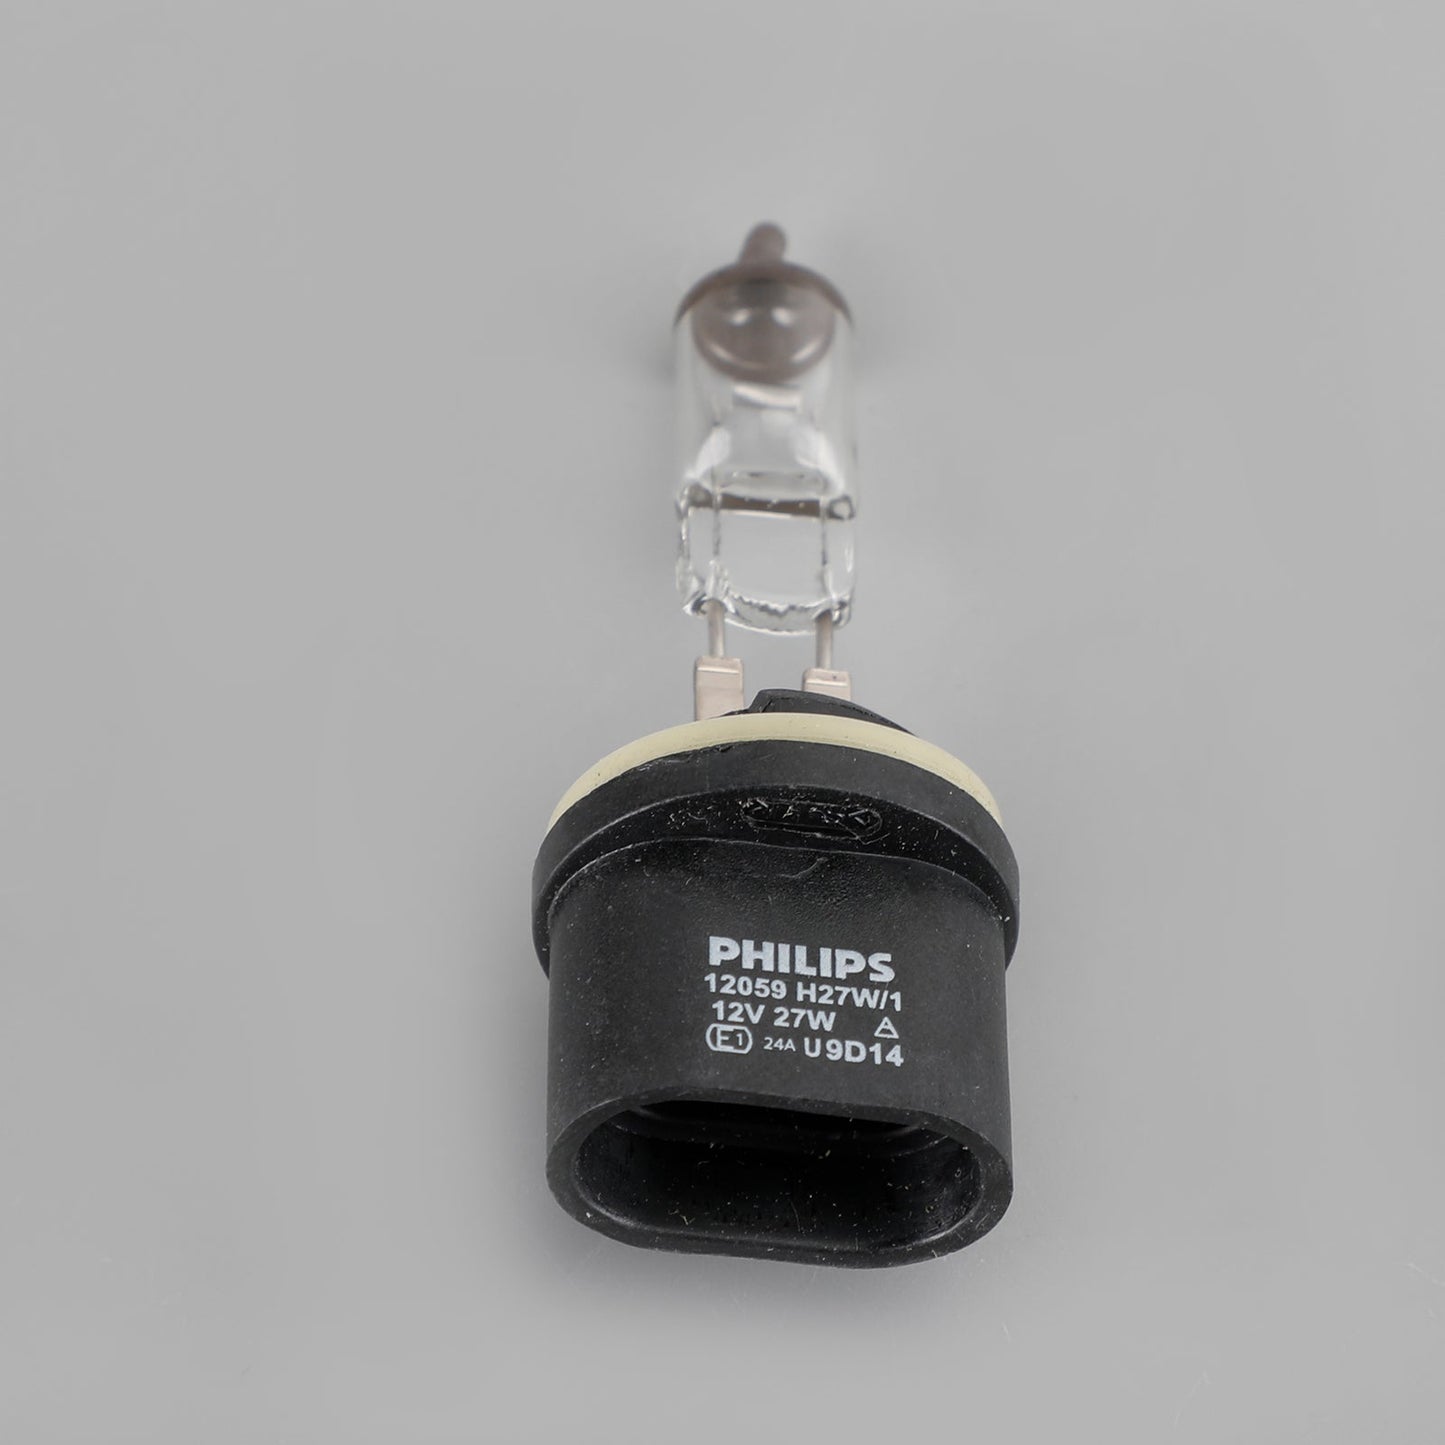 For Philips 12059C1 Standard Halogen Headlight H27W/1 12V27W PG13